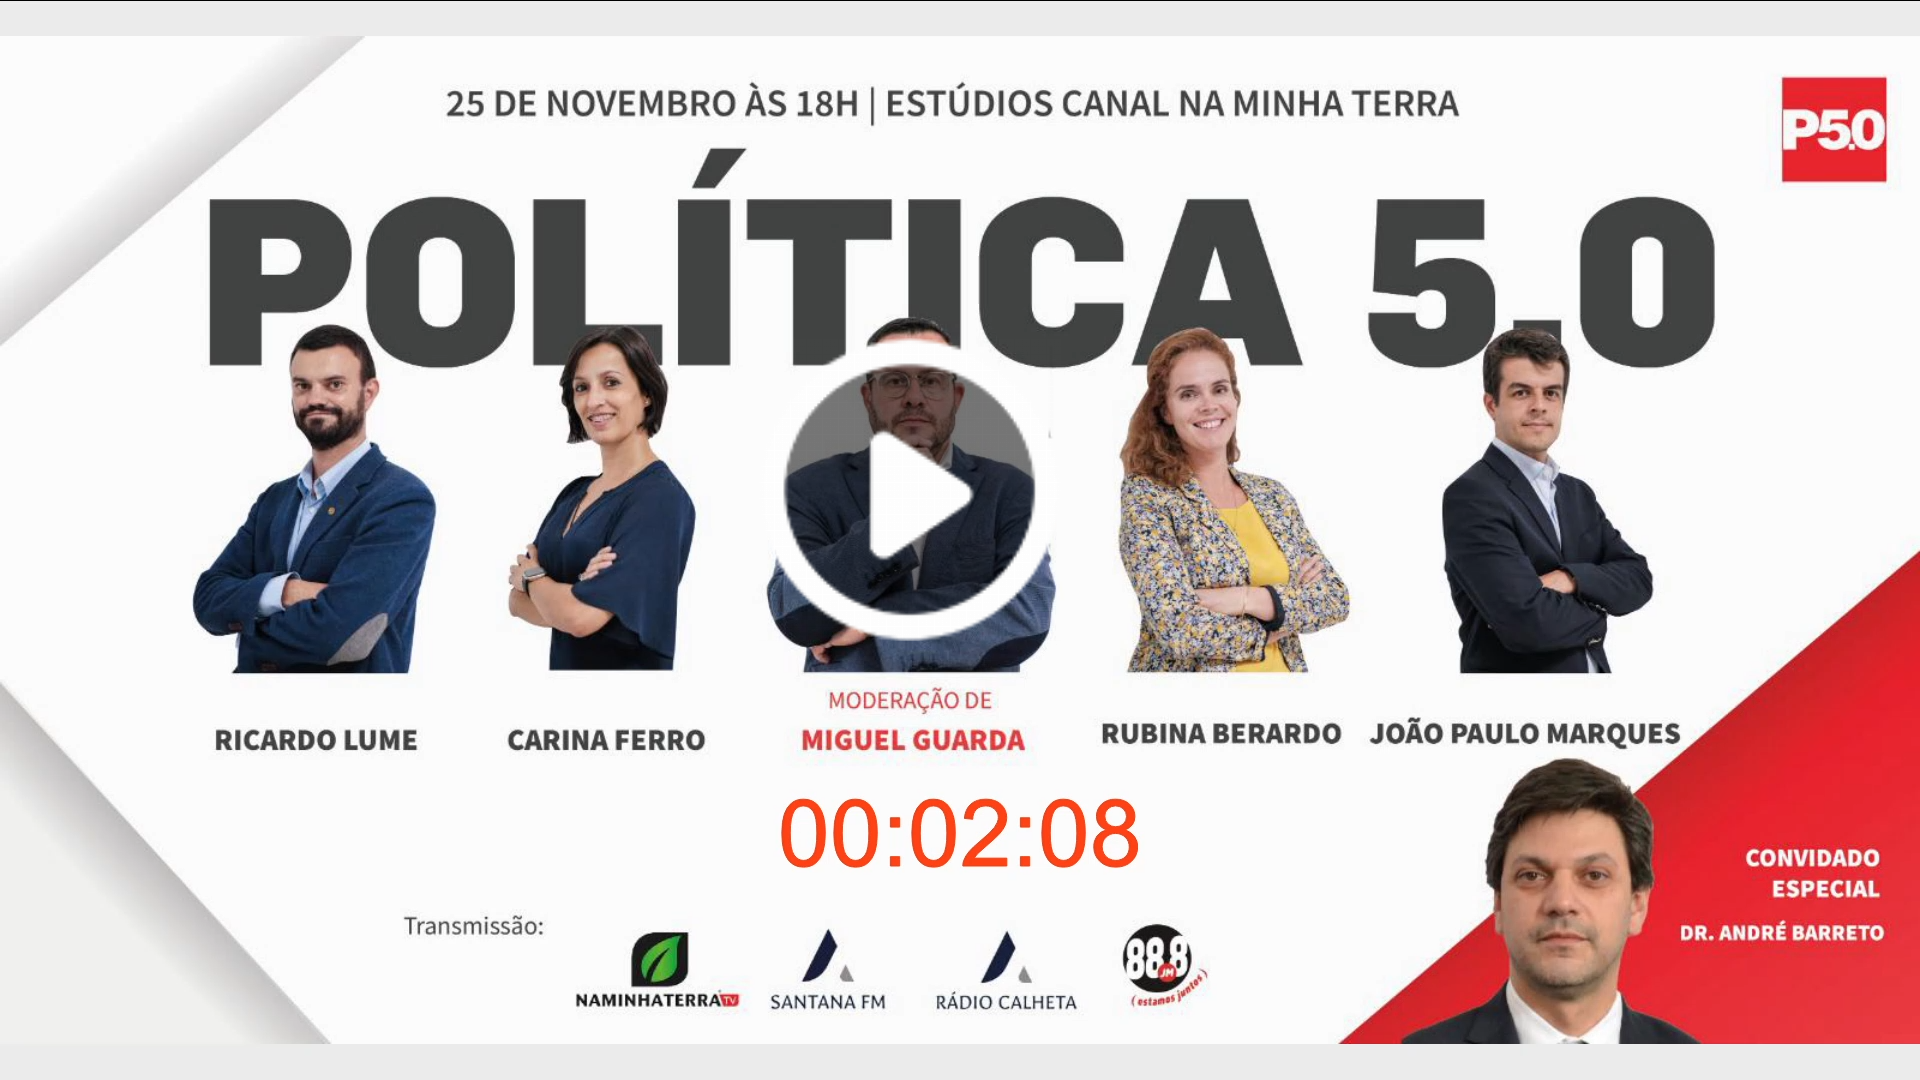 Dentro de momentos, Política 5.0 com o Dr. André Barreto como convidado